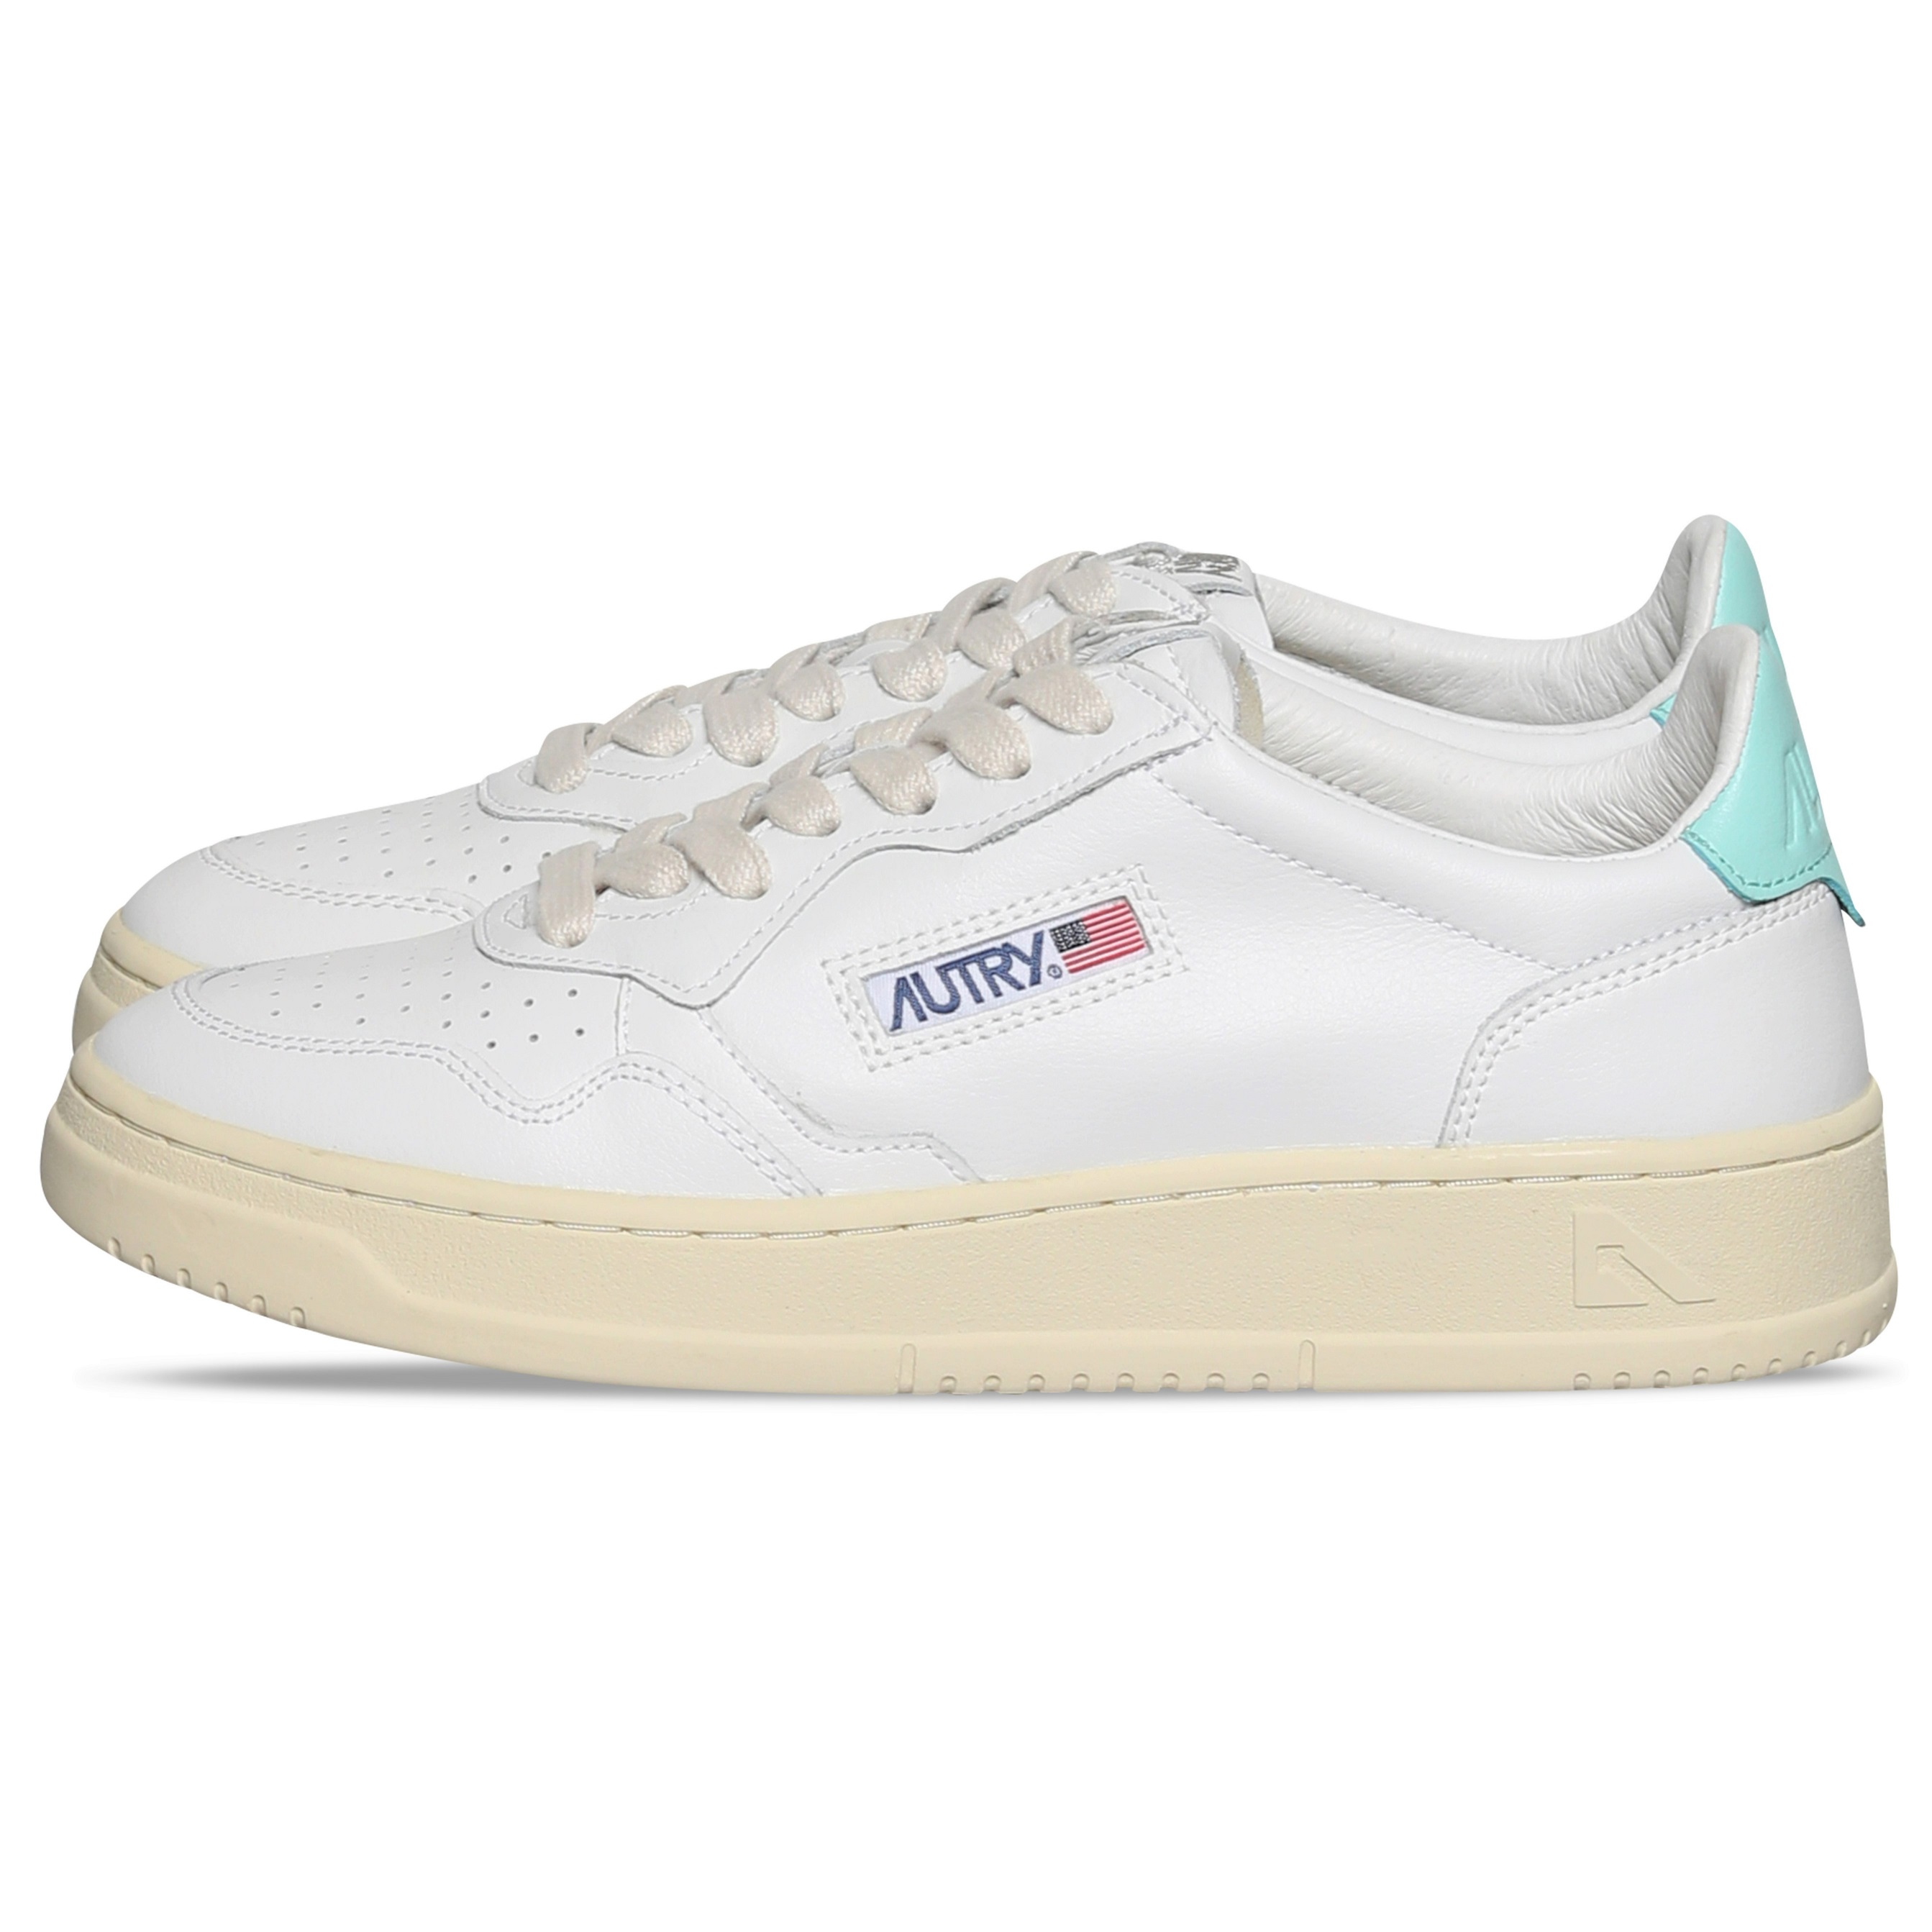 Autry Action Shoes Low Sneaker White/Turqoiuse 40